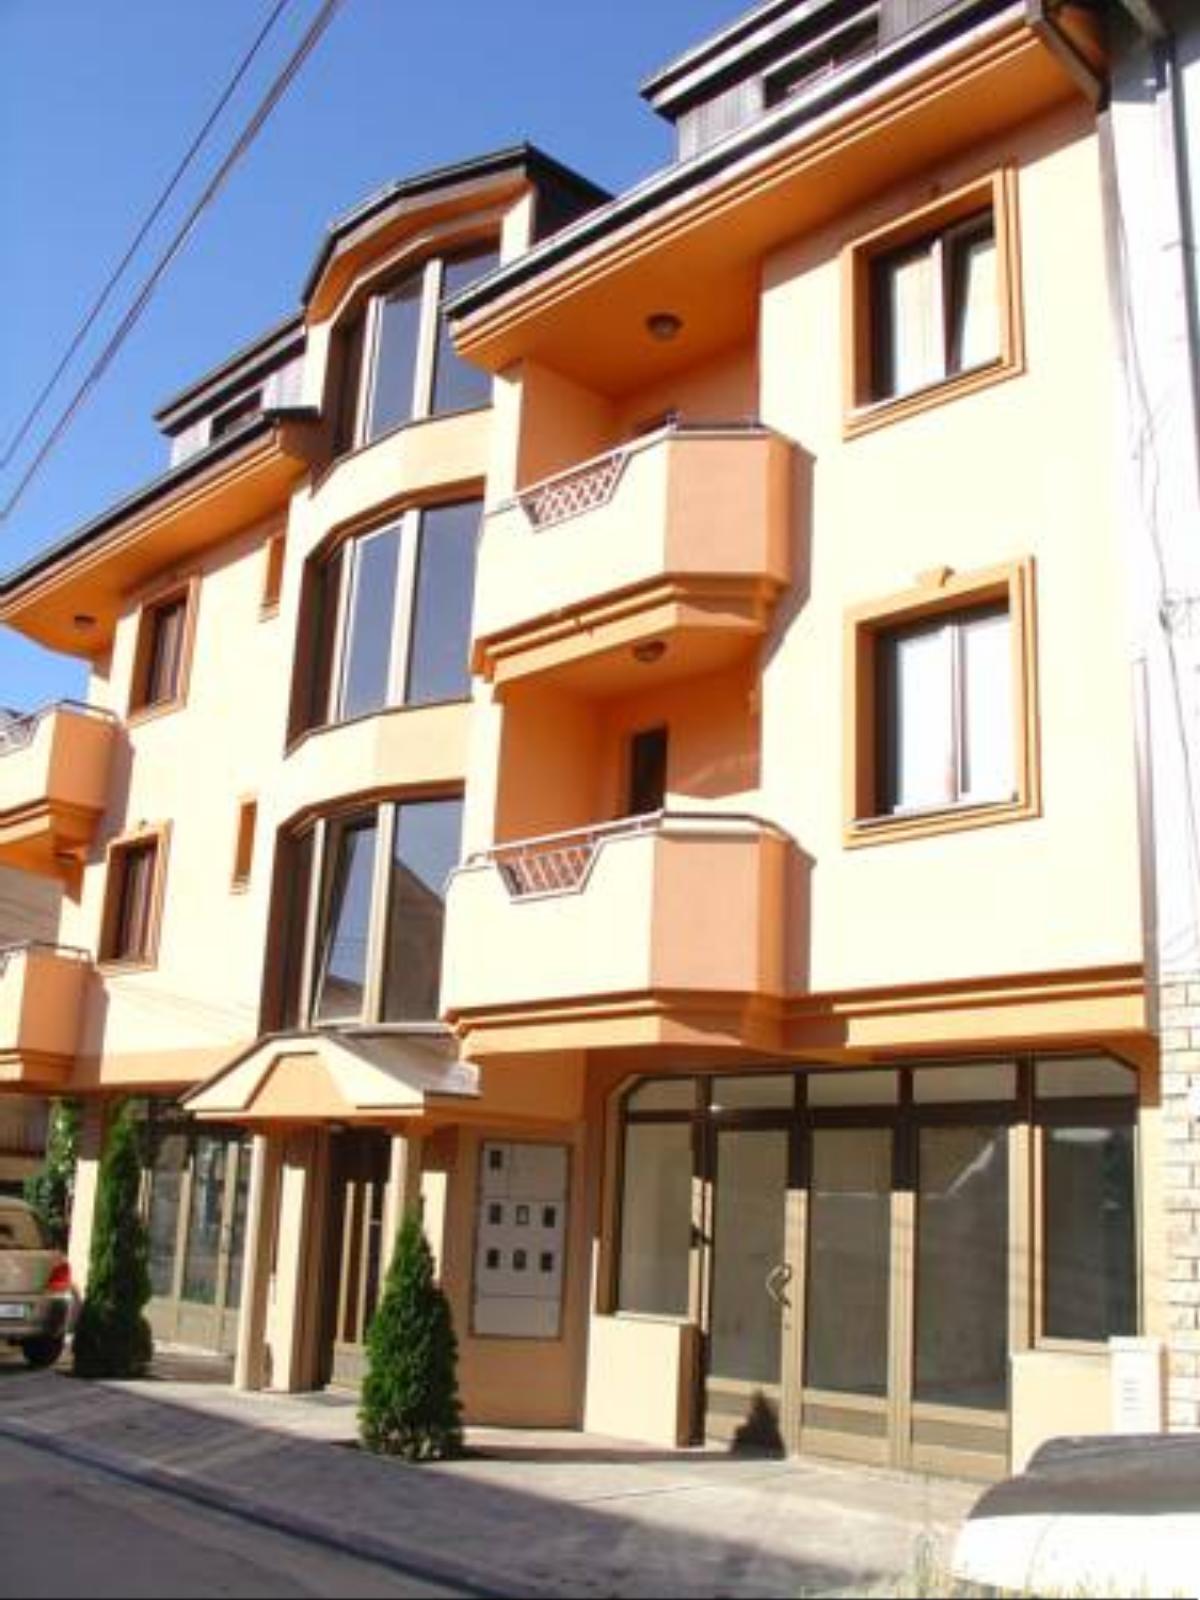 Kukunesh Apartments Hotel Ohrid Macedonia